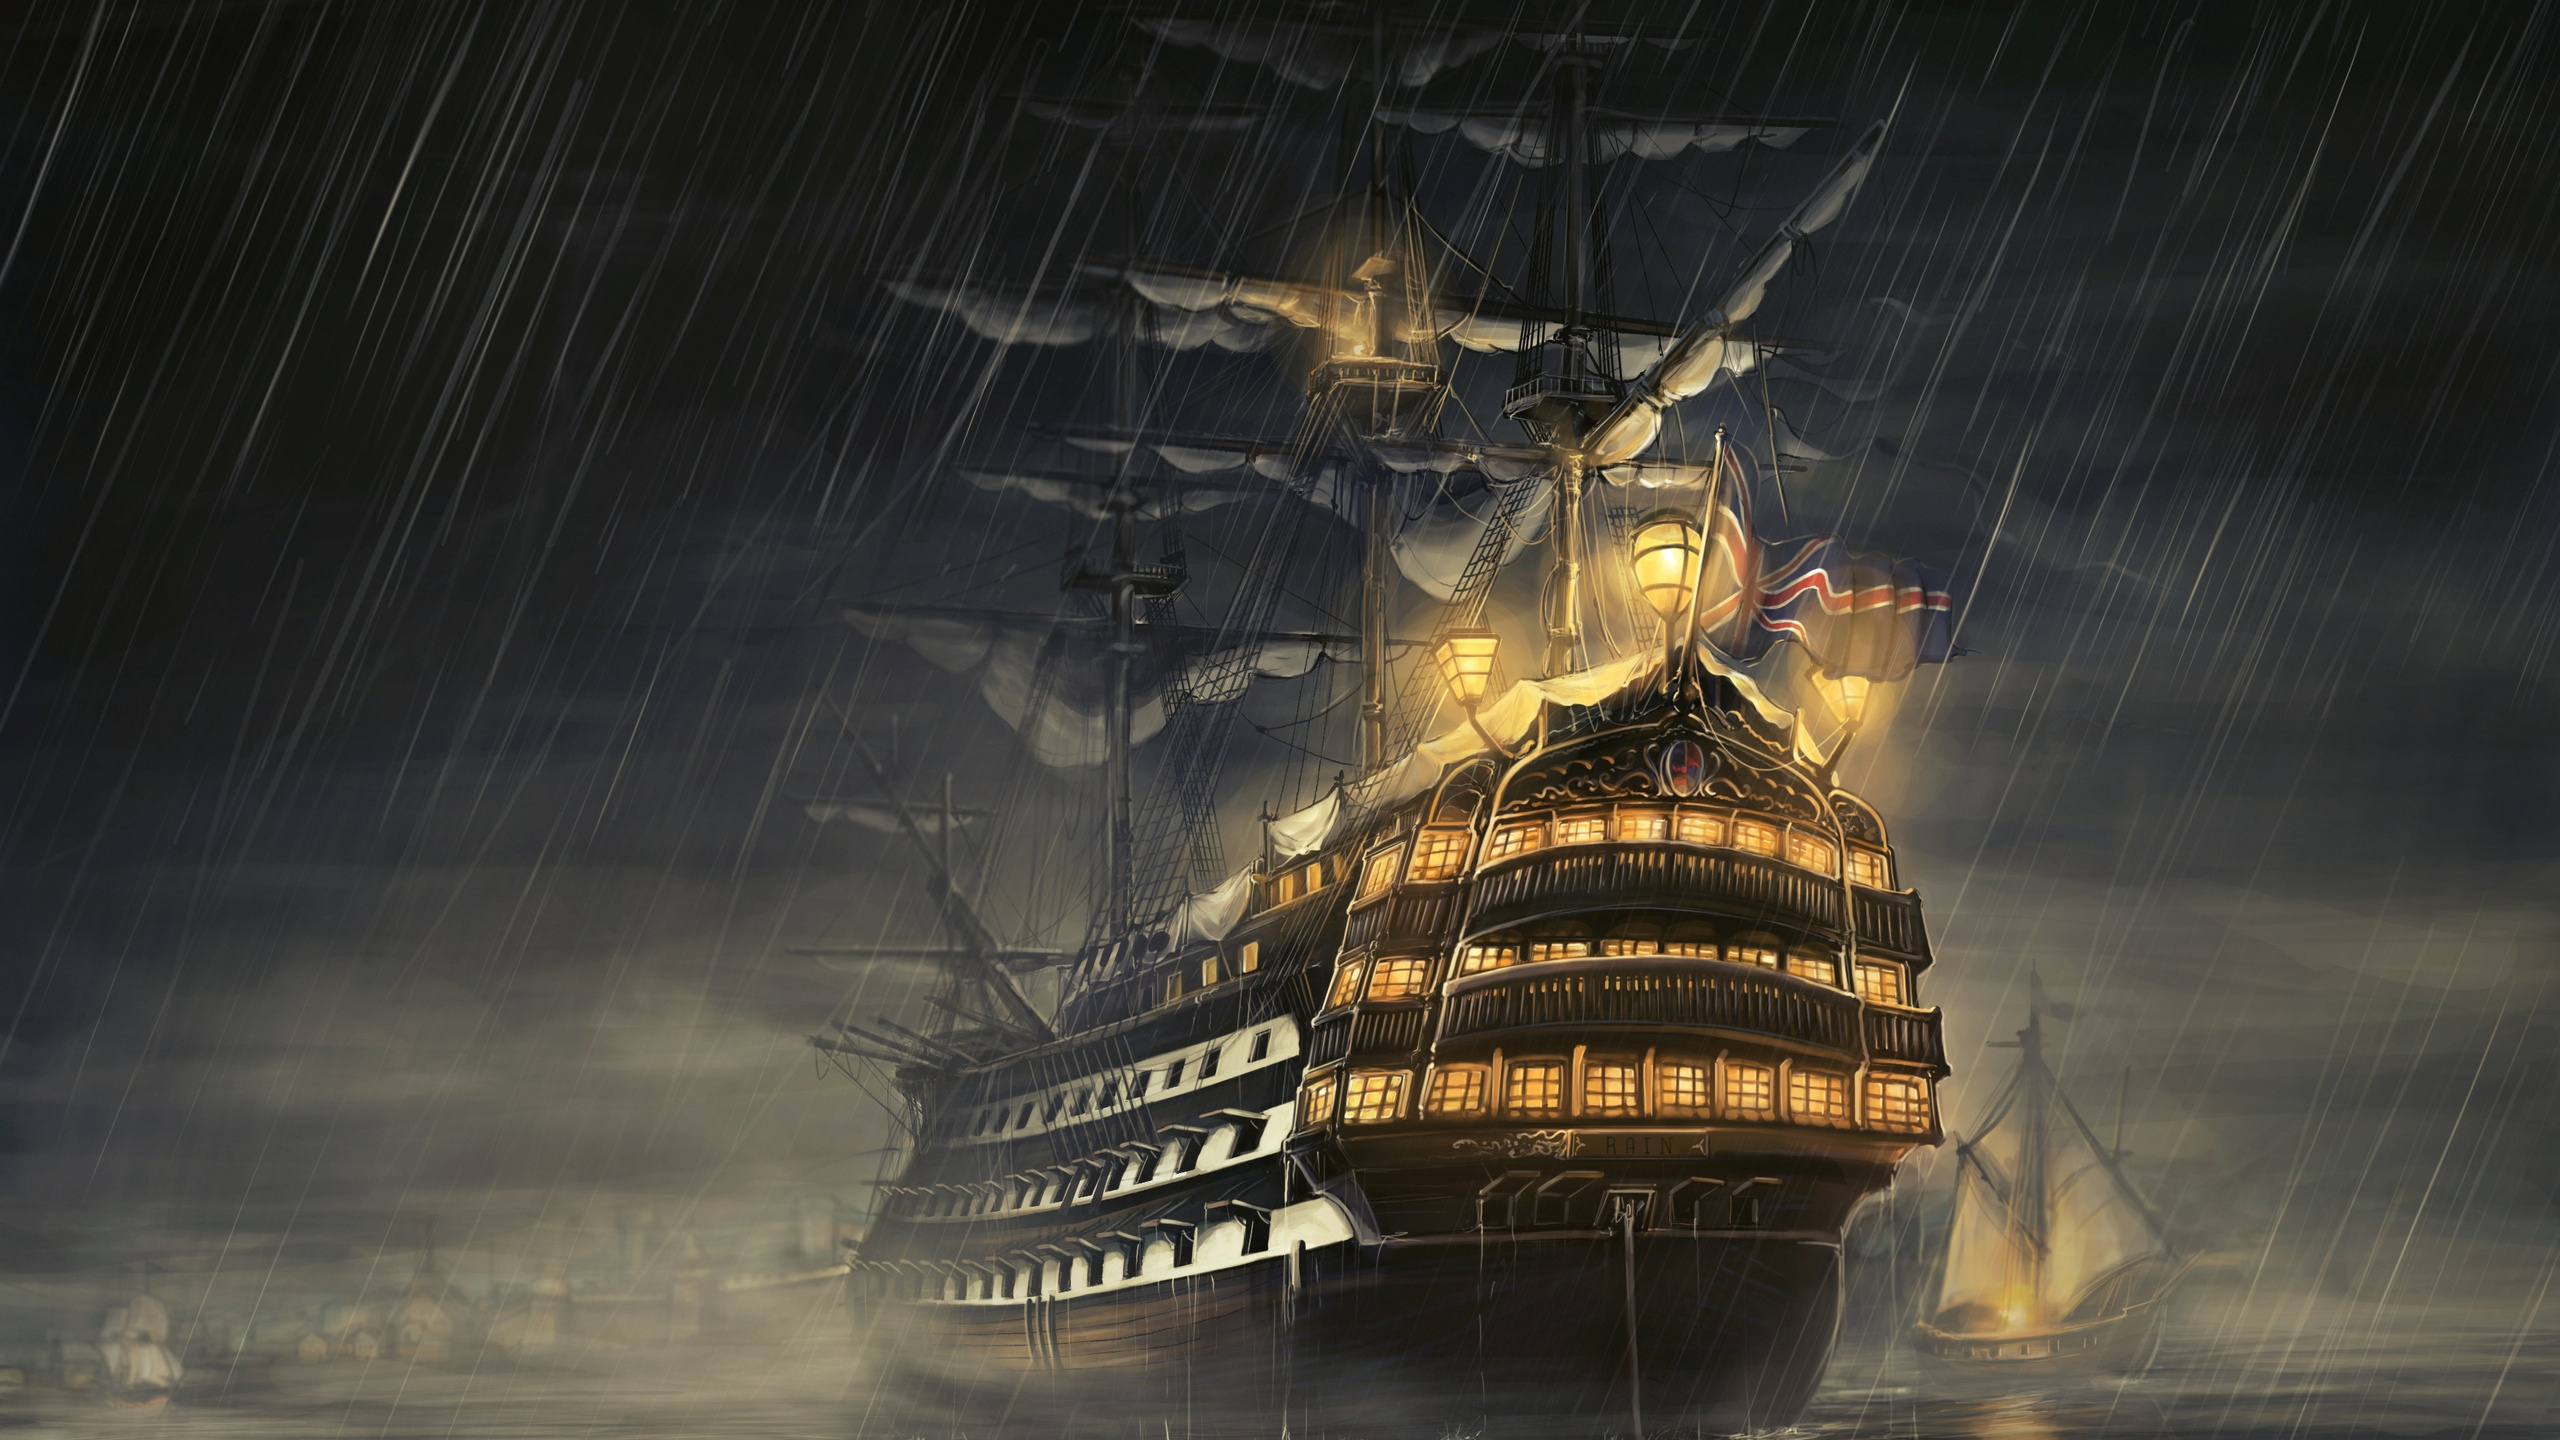 马尼拉大帆船, 船舶线路, 东indiaman, 幽灵船, 旗舰 壁纸 2560x1440 允许